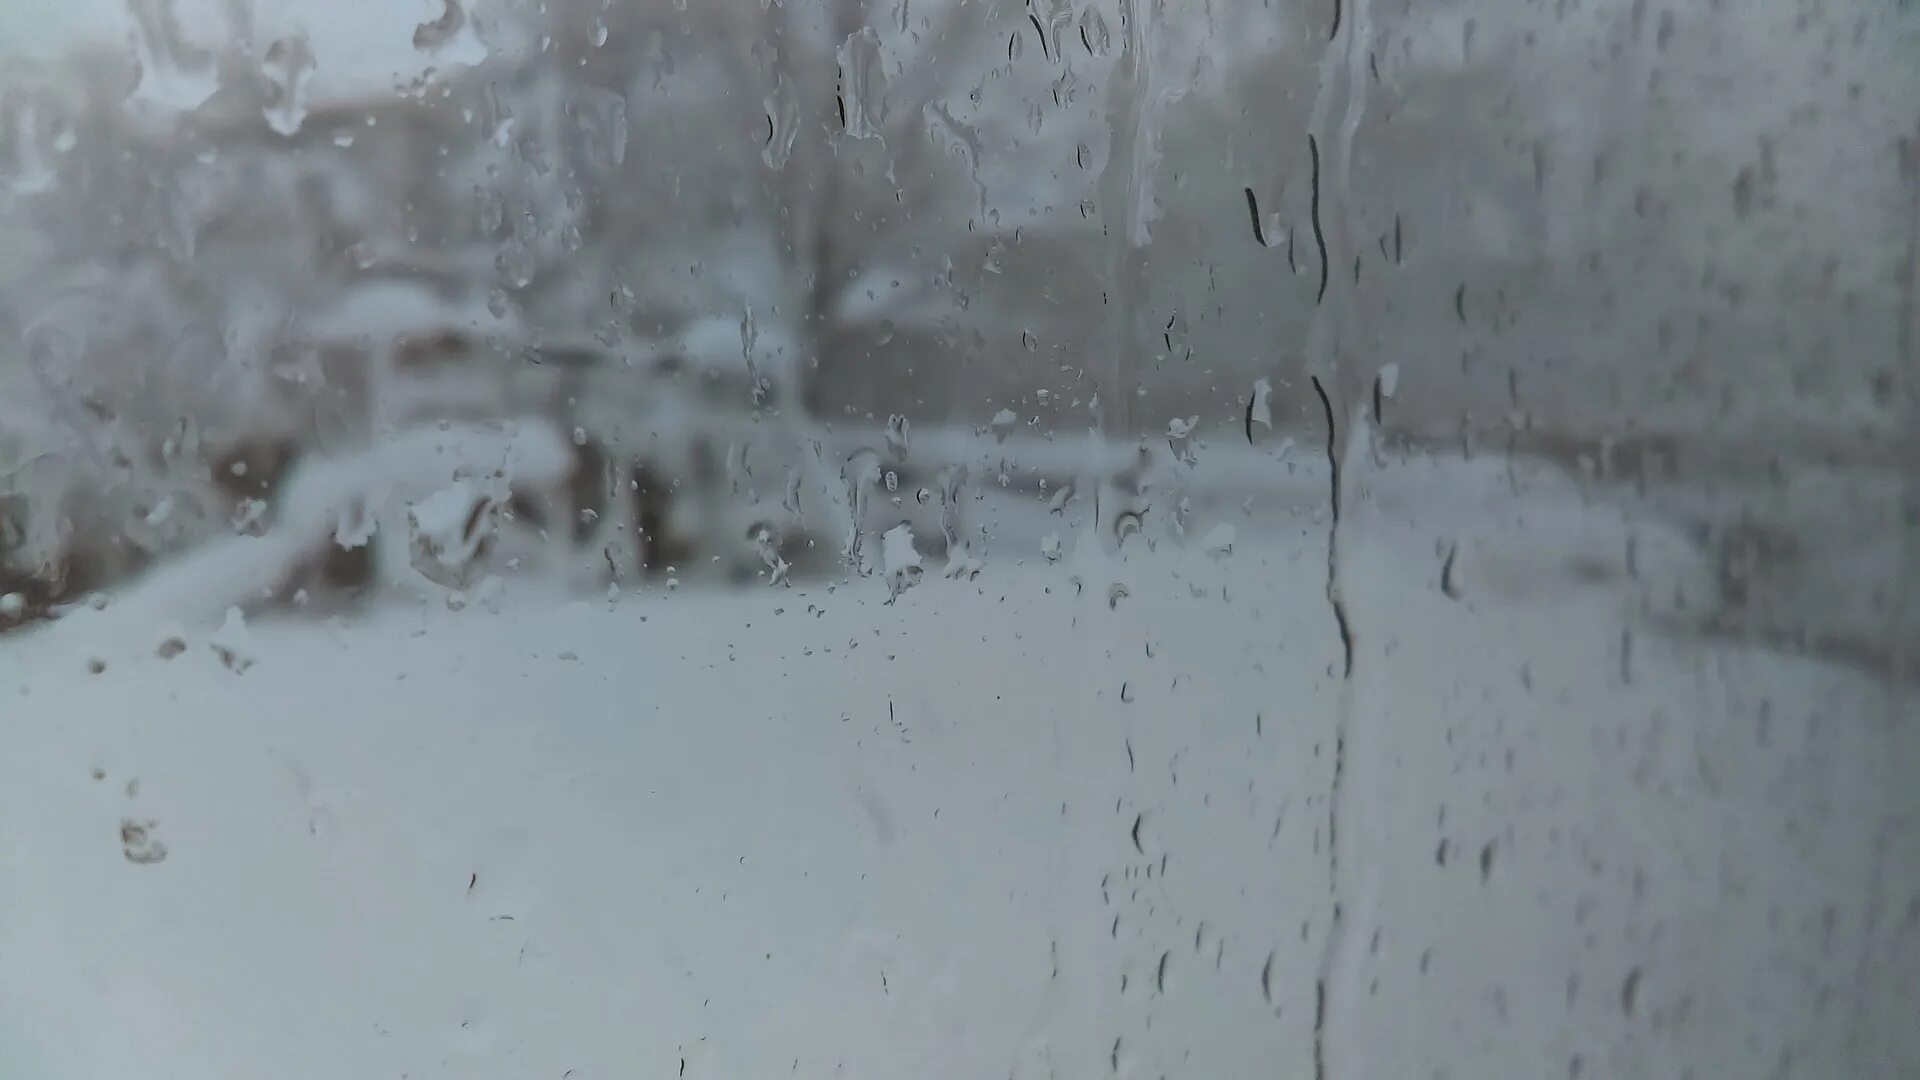 Толстой погода после мокрого. Снег с дождем. Слабый снег с дождем. Мокрый снег на окне. За окном снег и дождь.